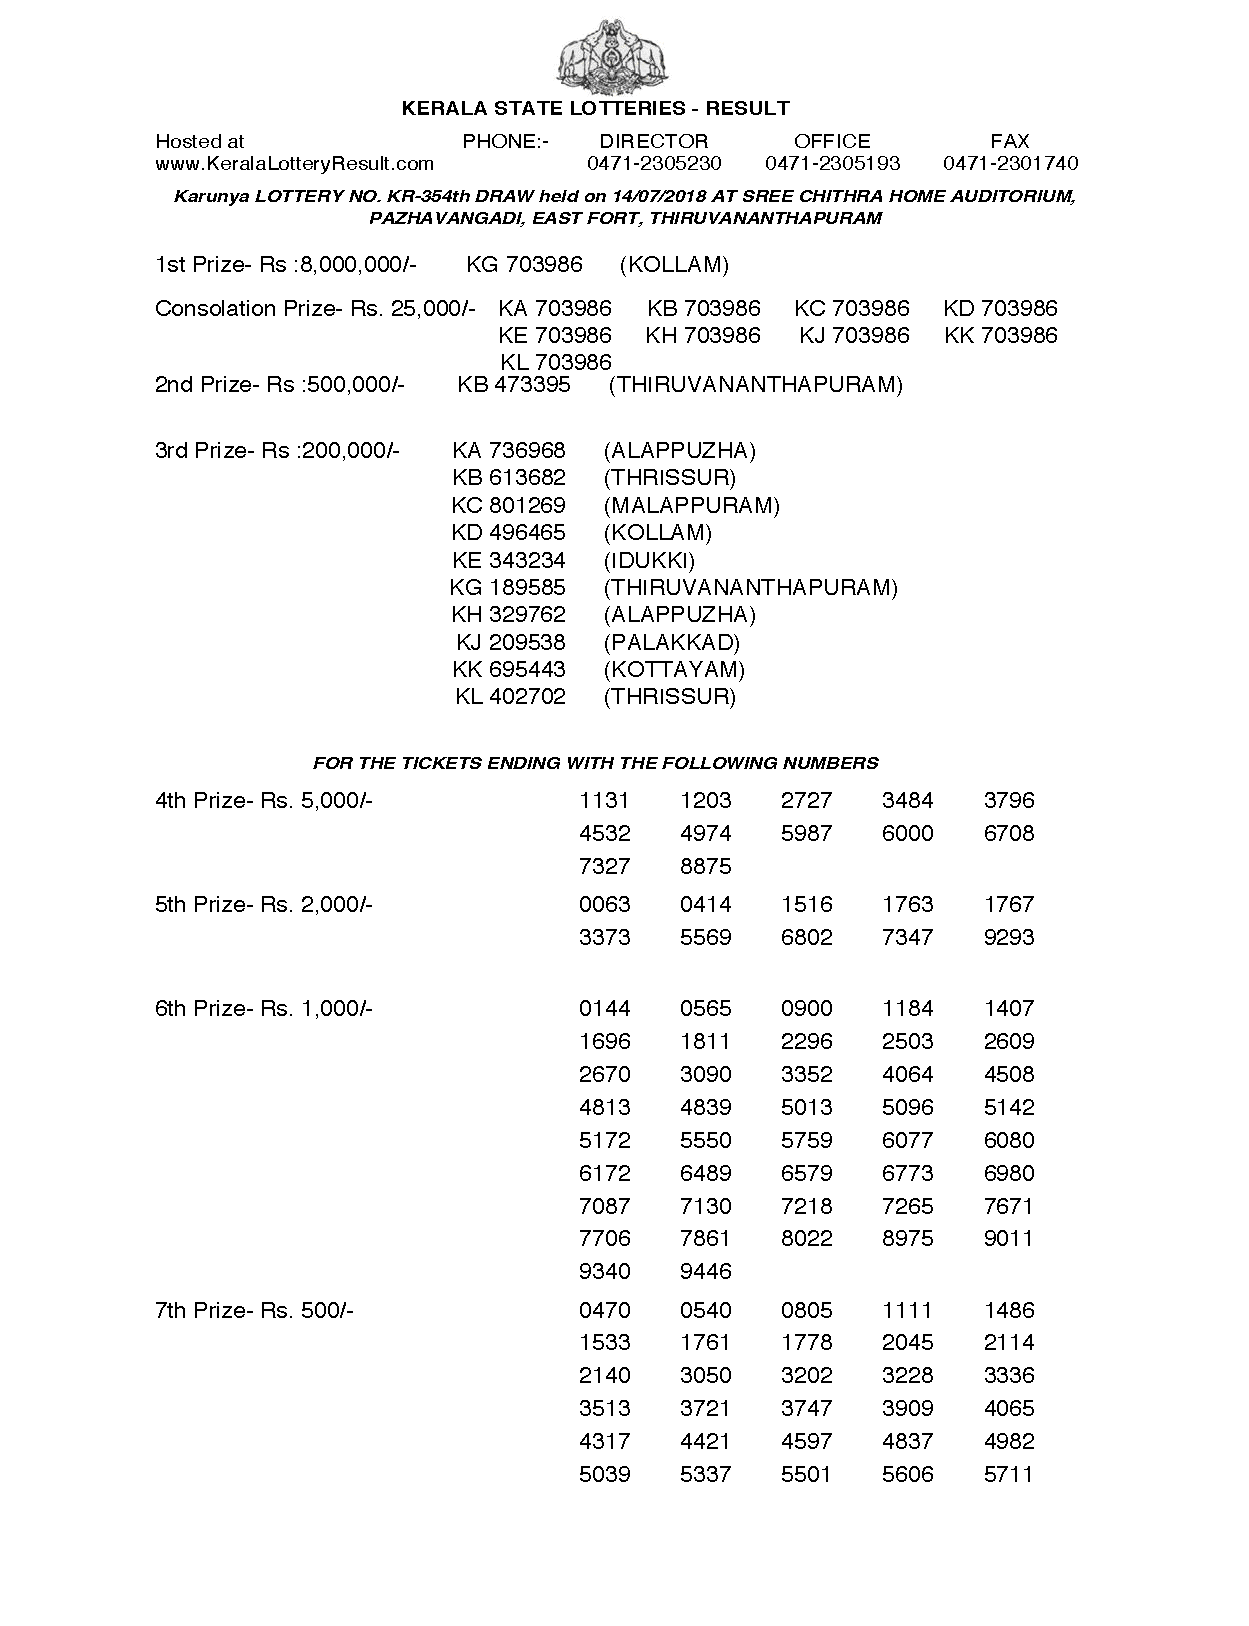 Karunya KR354 Kerala Lottery Results Screenshot: Page 1